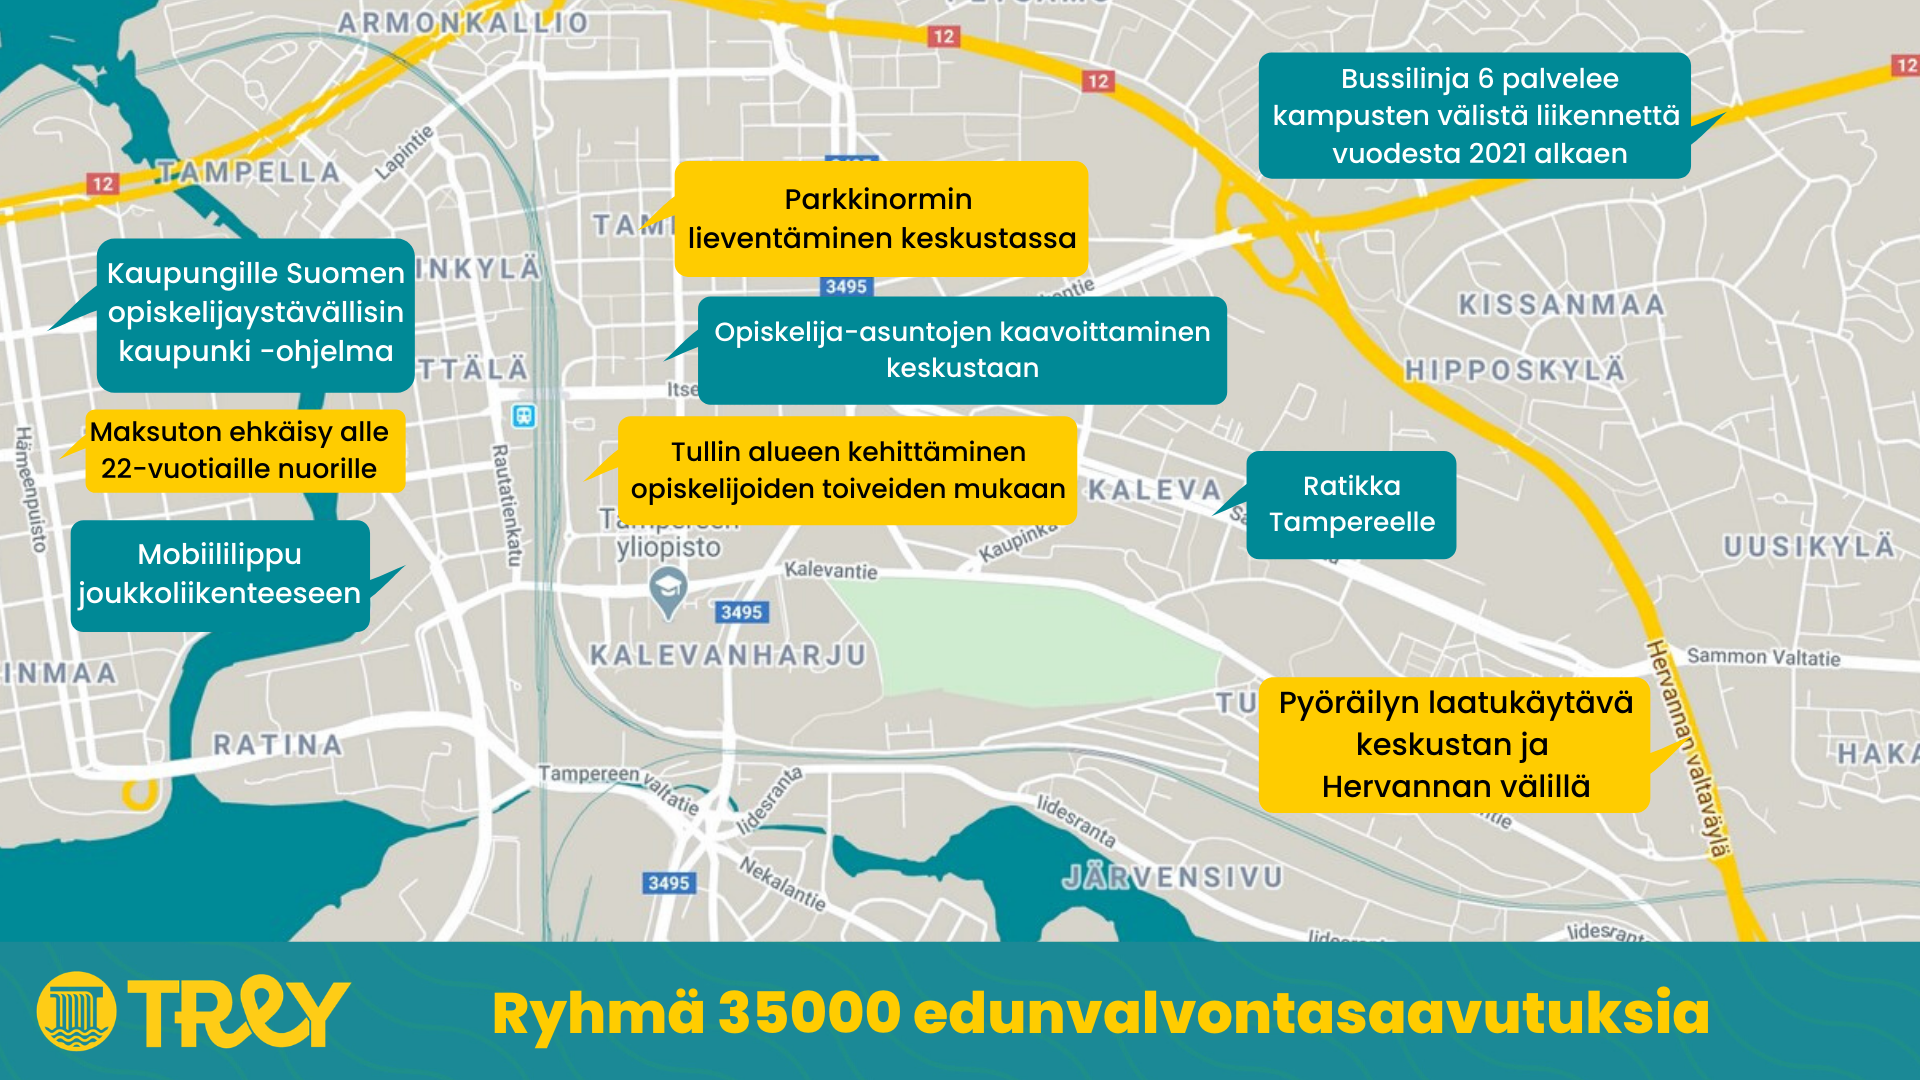 Ryhmä 35000 edunvalvontasaavutuksia Tampereen kartalla.